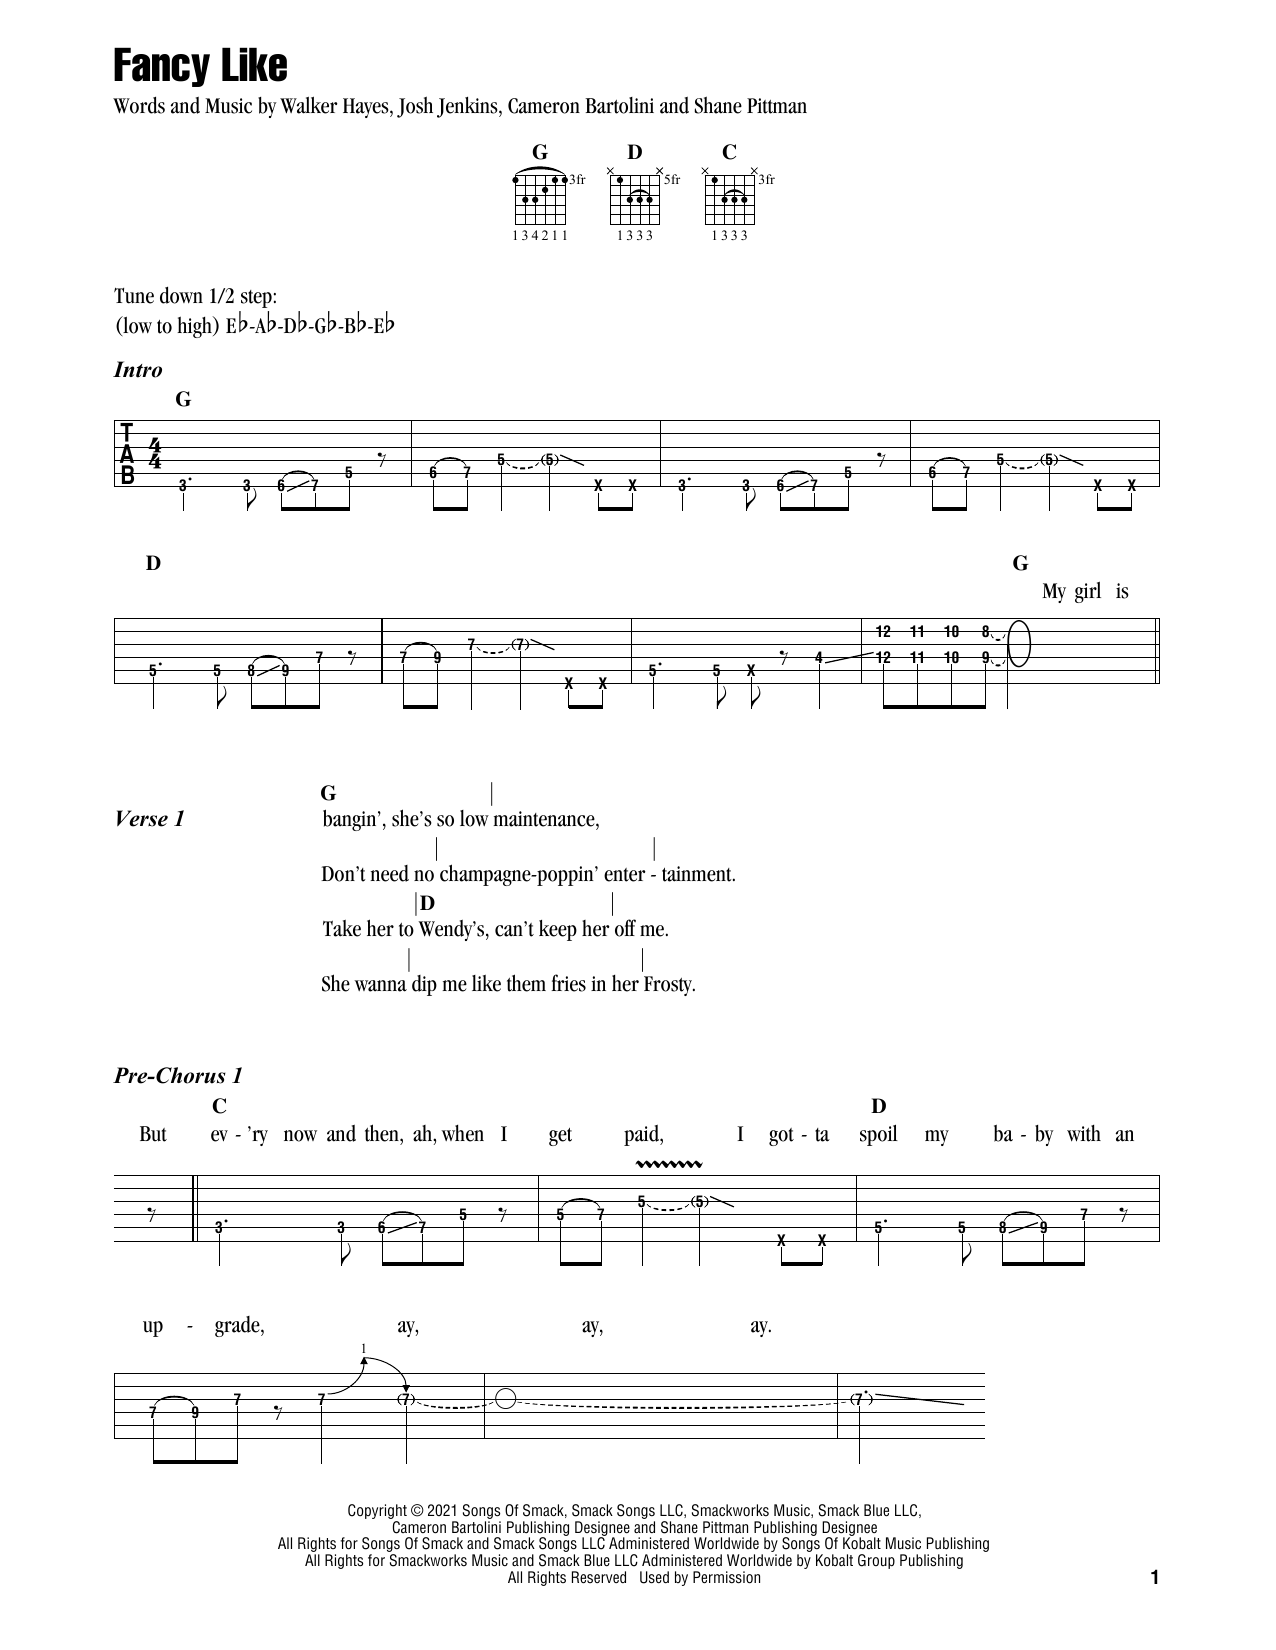 Walker Hayes Fancy Like Sheet Music Notes & Chords for Ukulele - Download or Print PDF